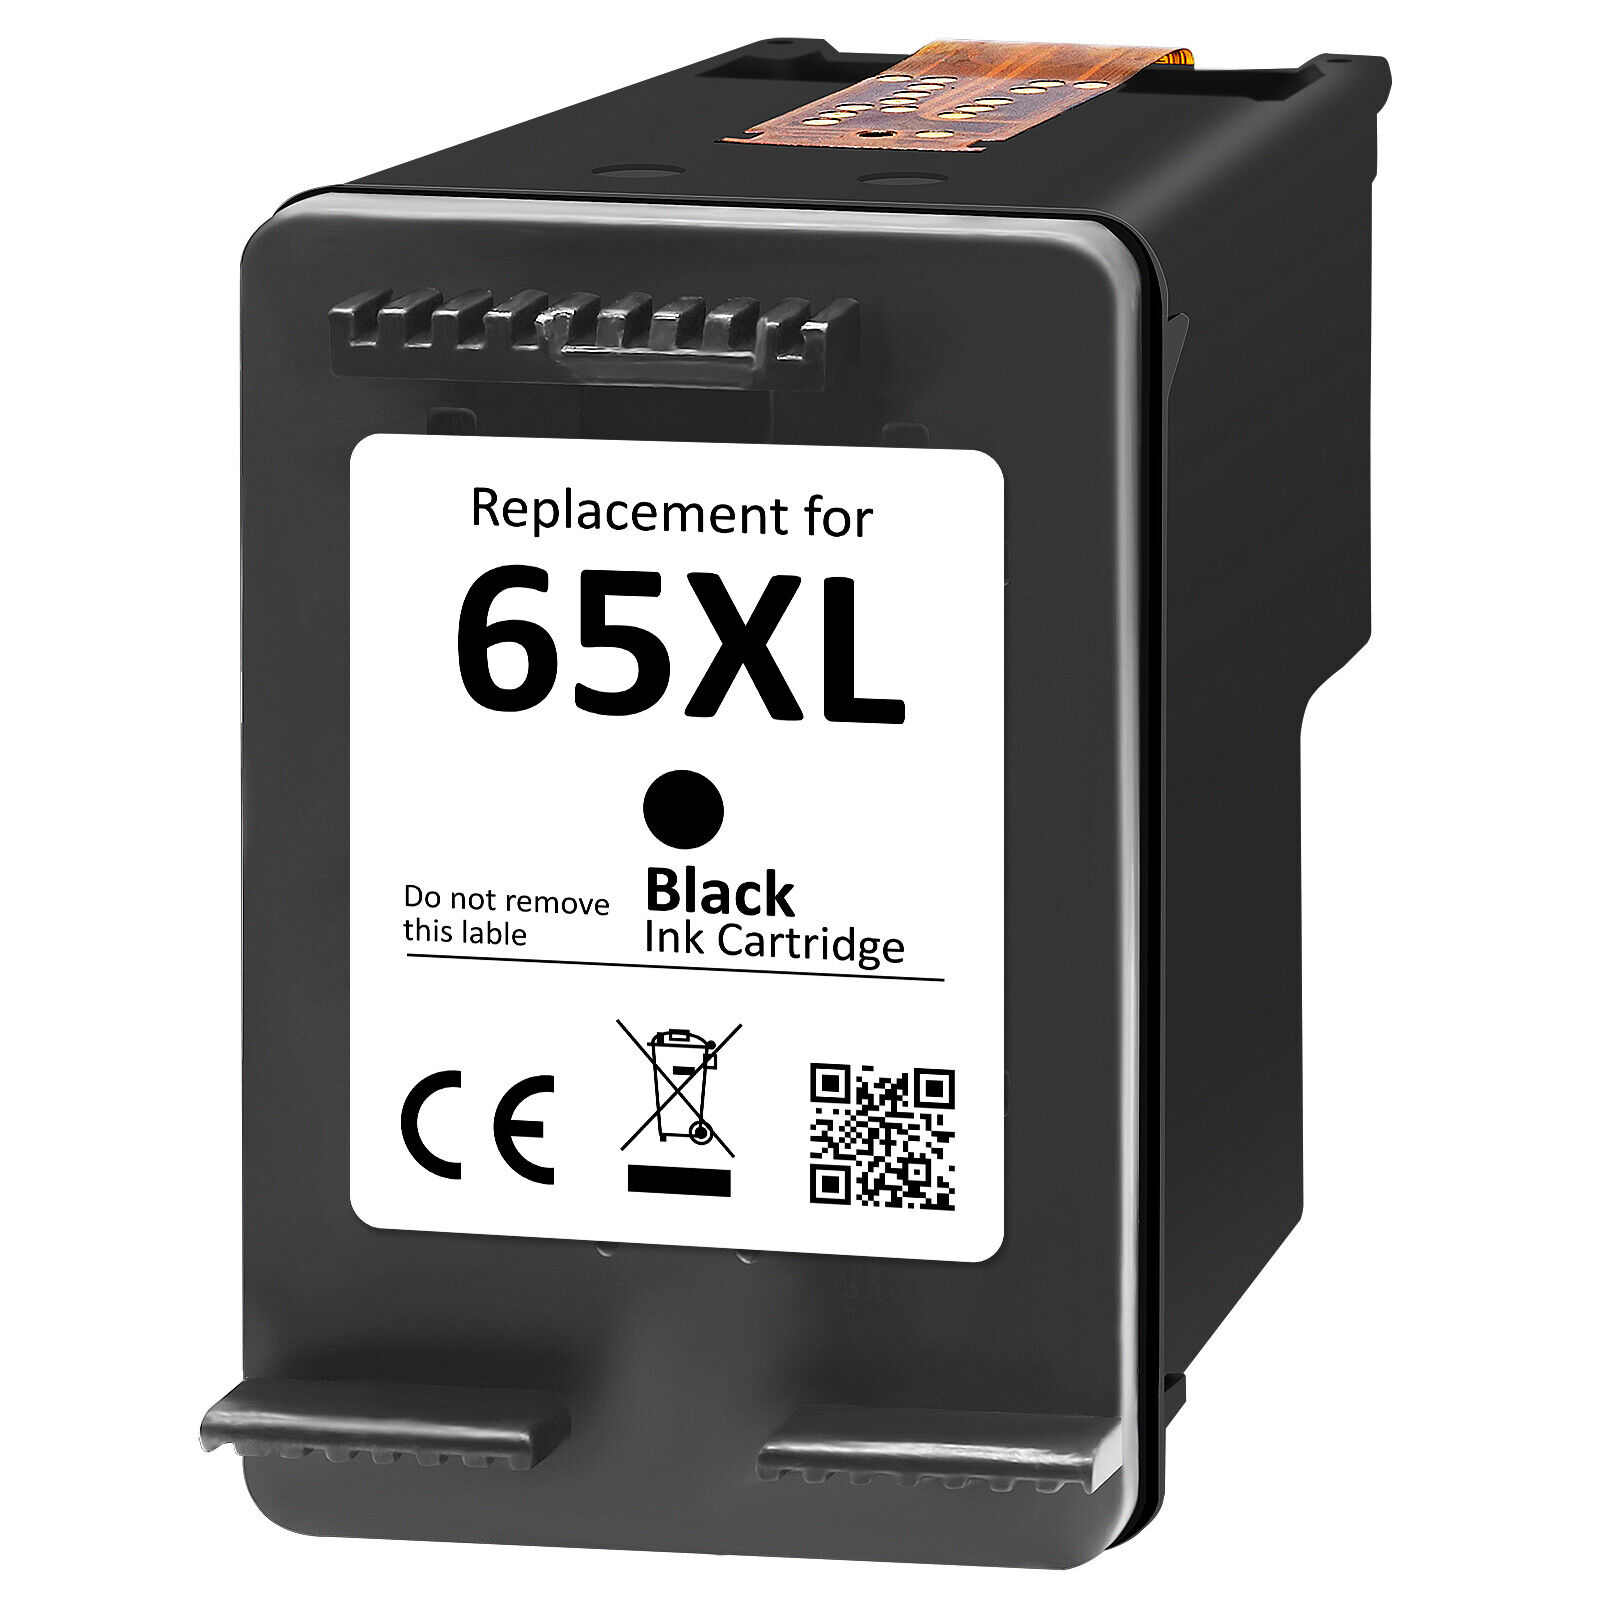 65 XL Ink Cartridges for HP 65XL Deskjet 2600 2655 3720 ENVY 5000 5020 5052 5055